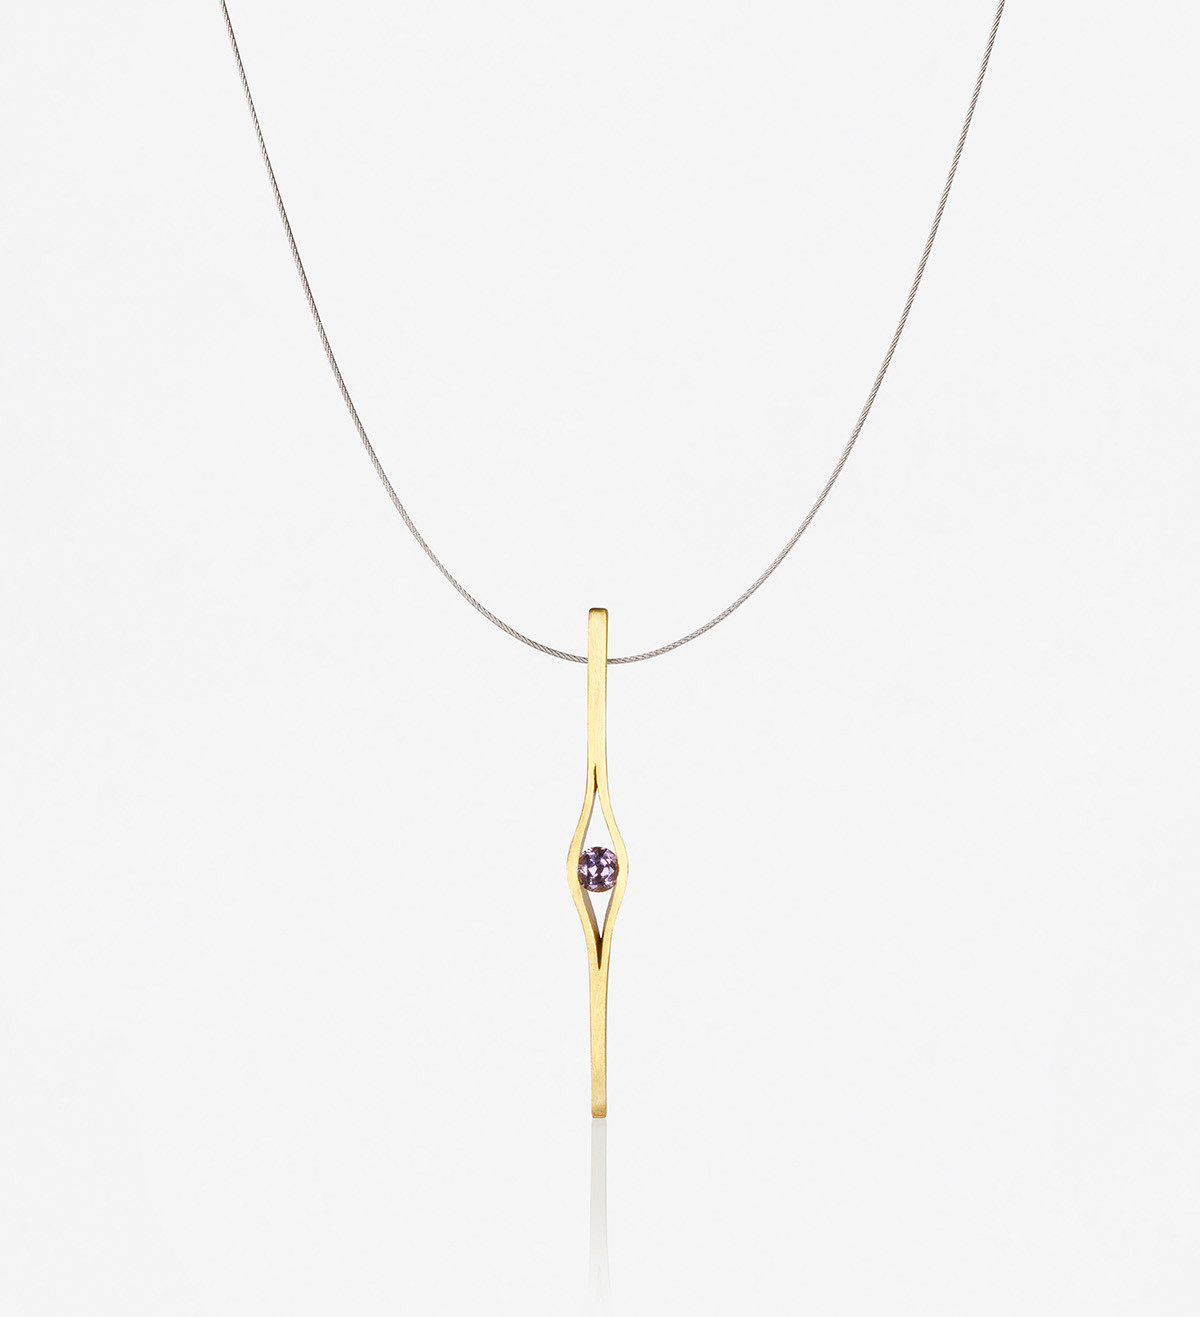 Colgante oro con zafiro lila Wennick-Lefèvre 0,21ct